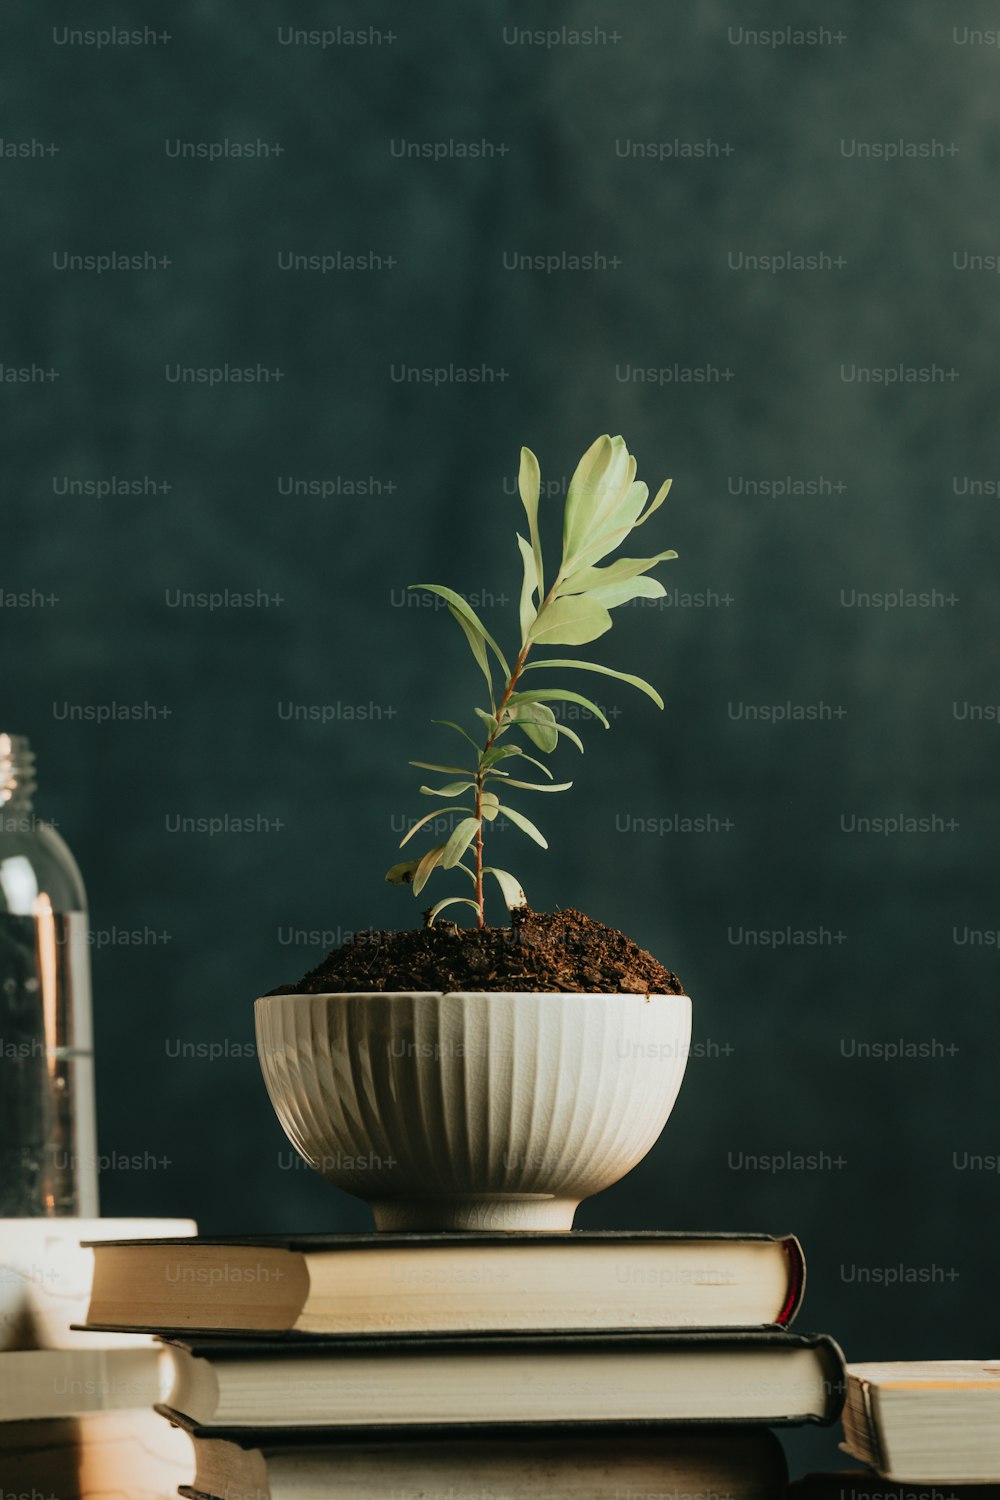 책 더미 위에 하얀 그릇에 담긴 작은 식물